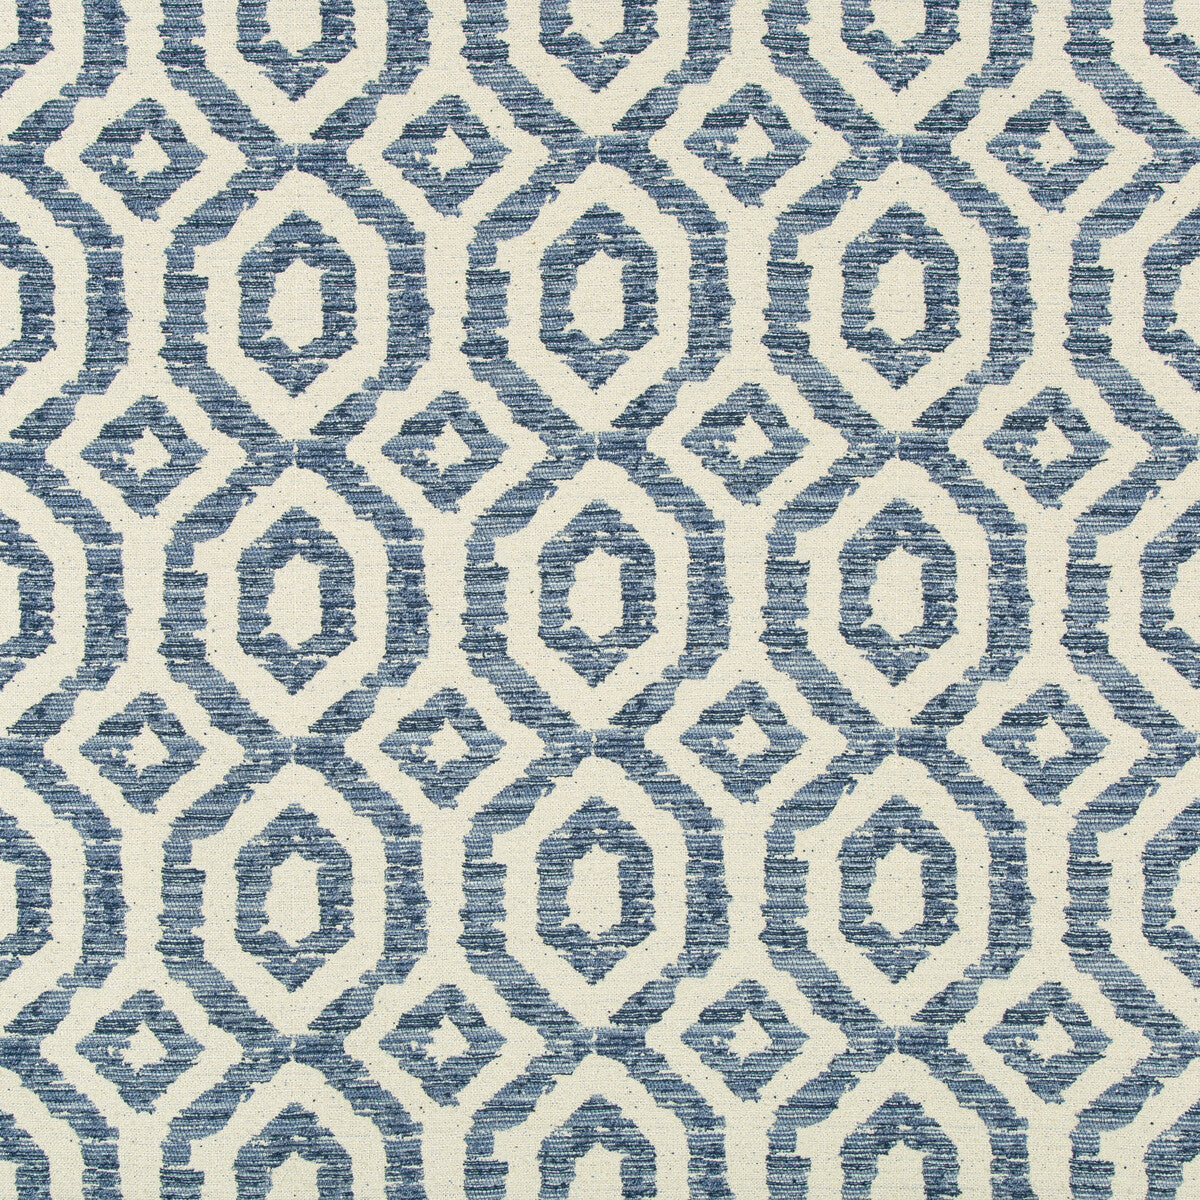 Kravet Design fabric in 35685-511 color - pattern 35685.511.0 - by Kravet Design